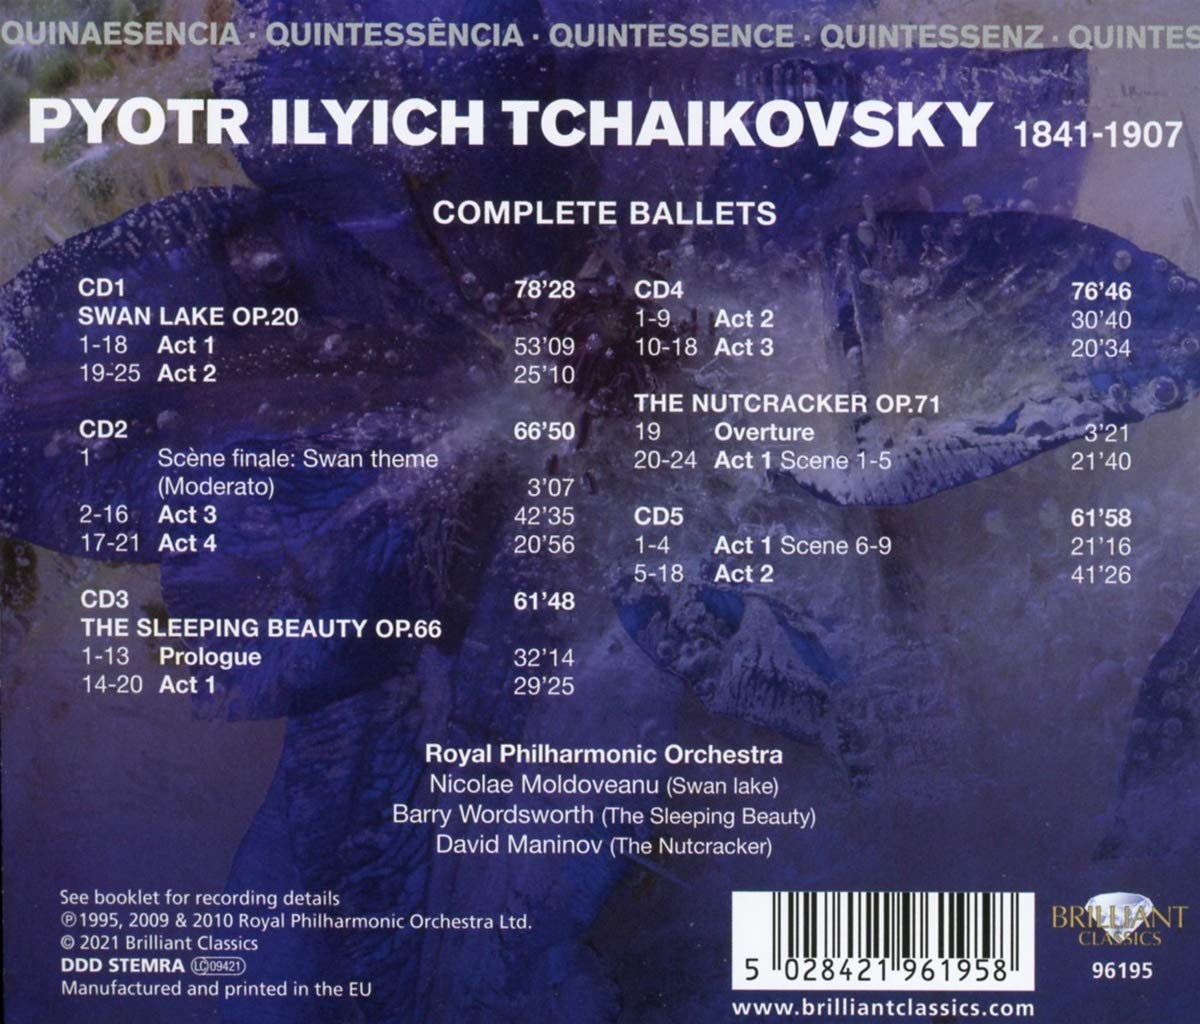 Royal Philharmonic Orchestra 차이코프스키: 3대 발레 전곡 (Tchaikovsky: Complete Ballets) 